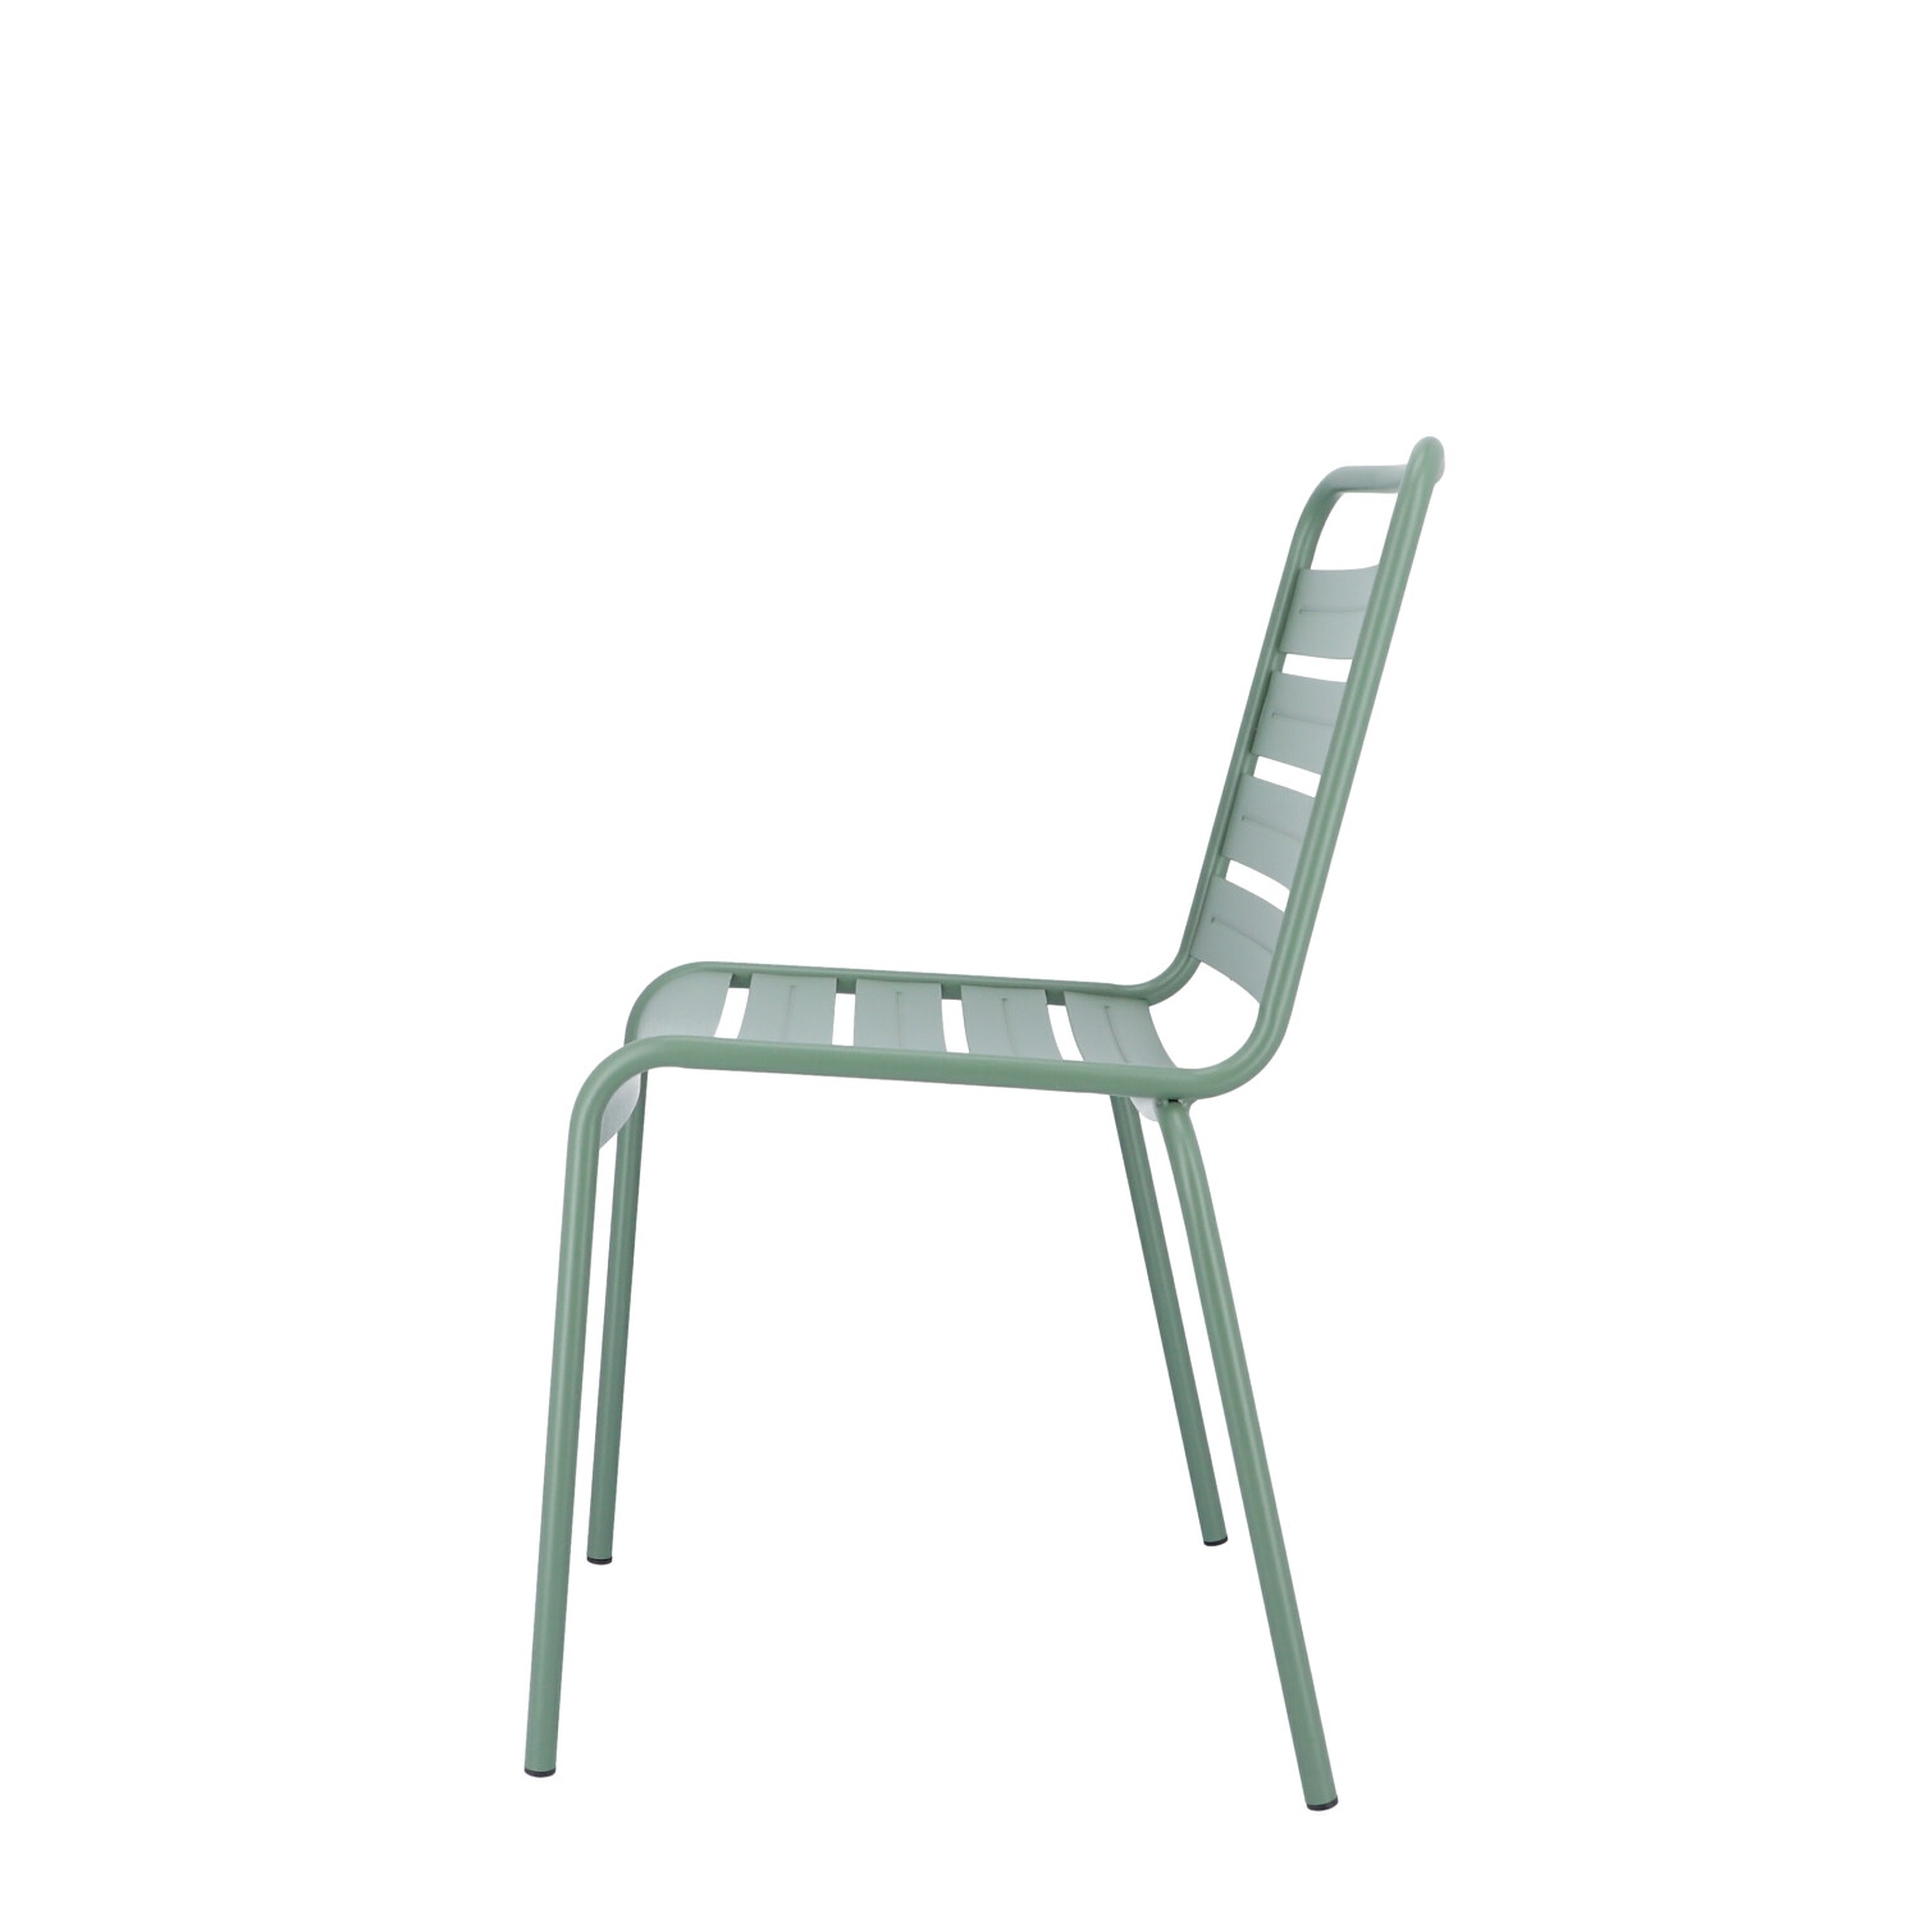 Der moderne Stapelstuhl Mya wurde aus Aluminium gefertigt und hat einen salbei Farbton. Designet wurde der Stuhl von der Marke Jan Kurtz.